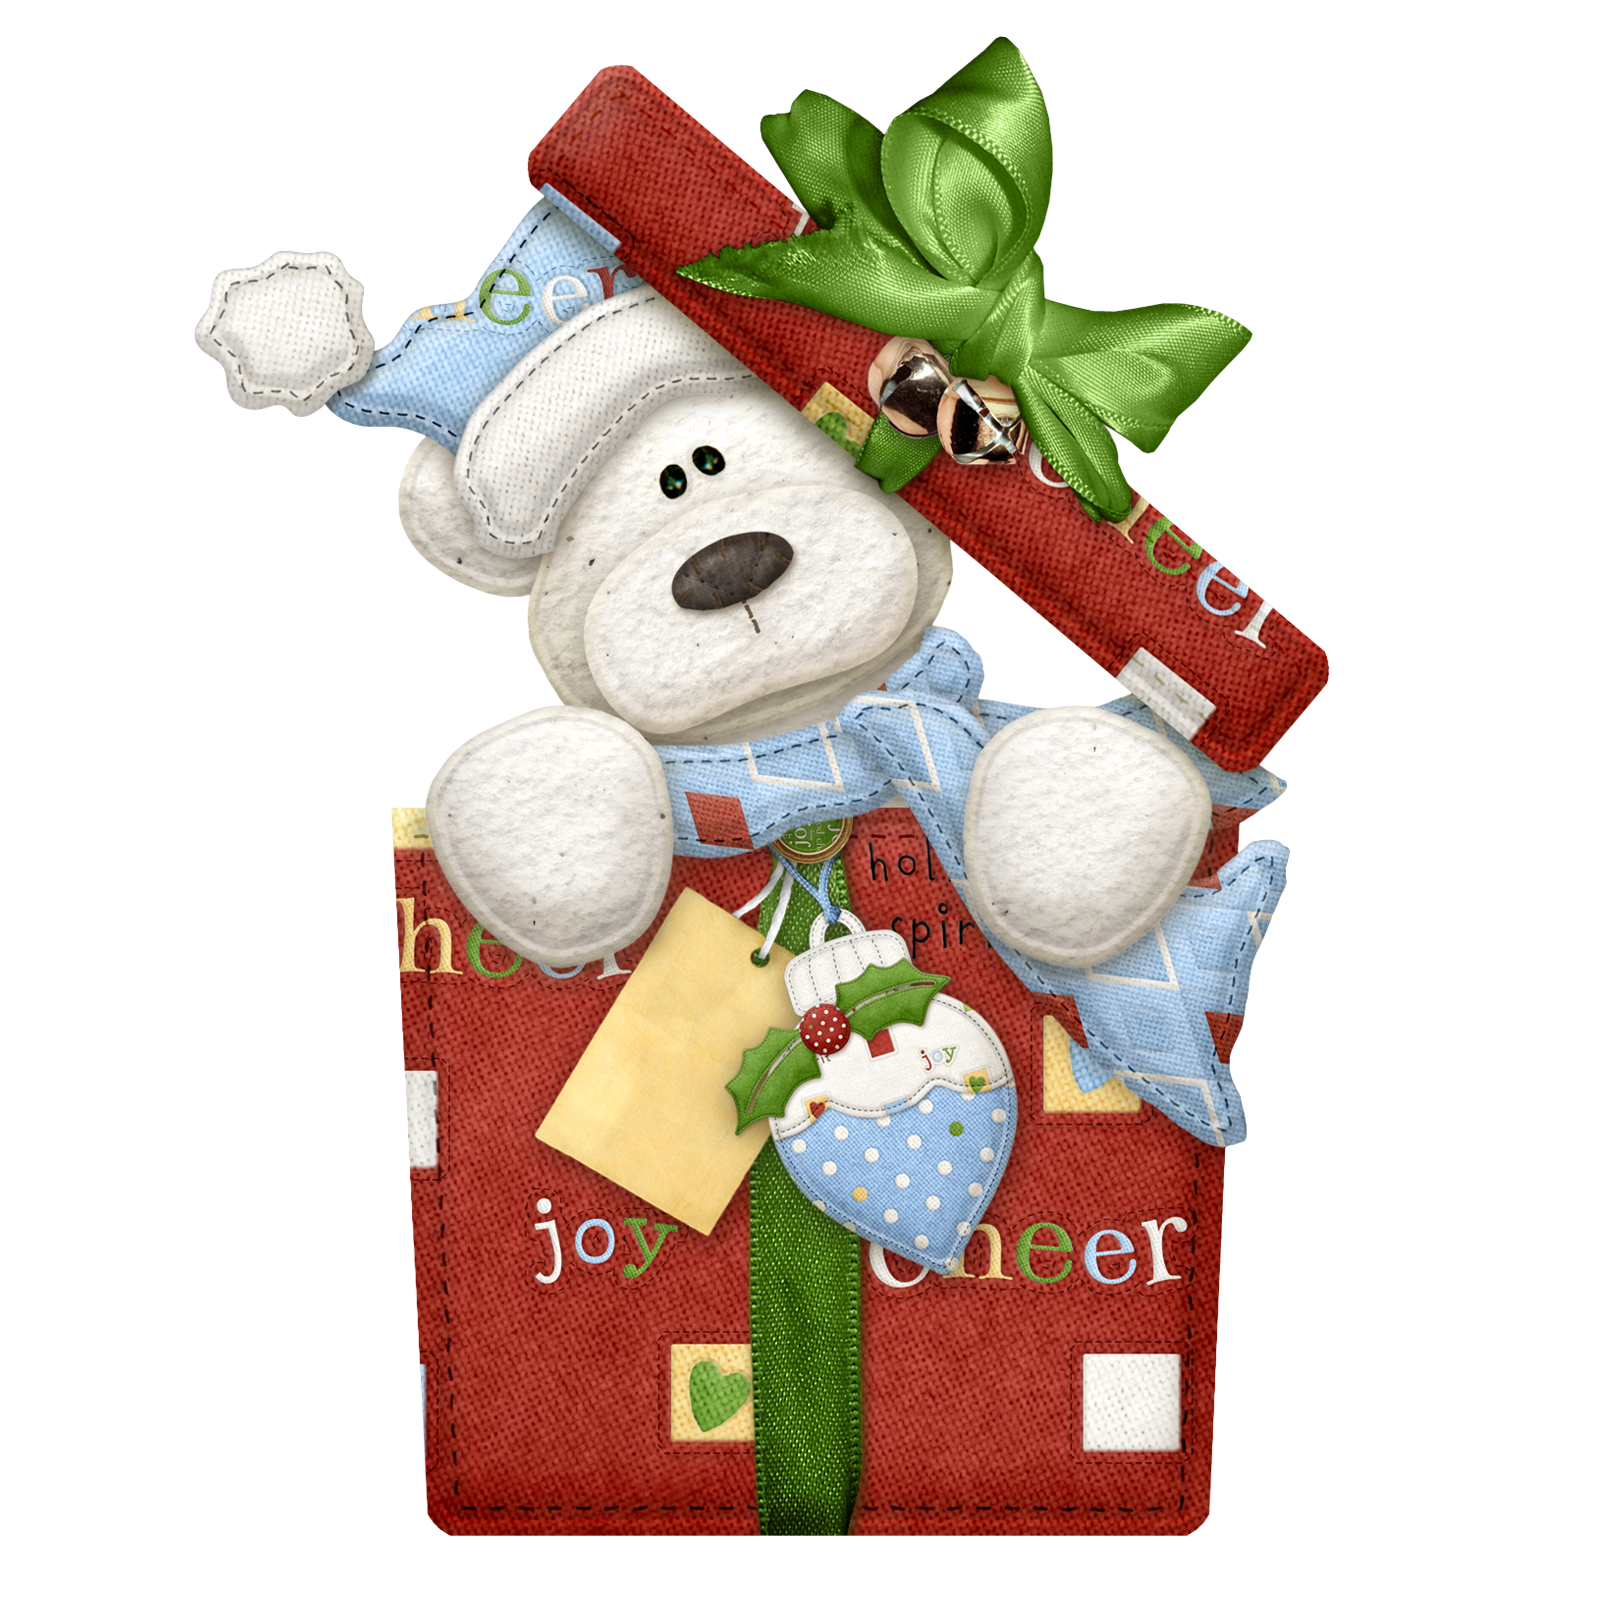 Gift Moroz Bear Day Ded Christmas PNG Image